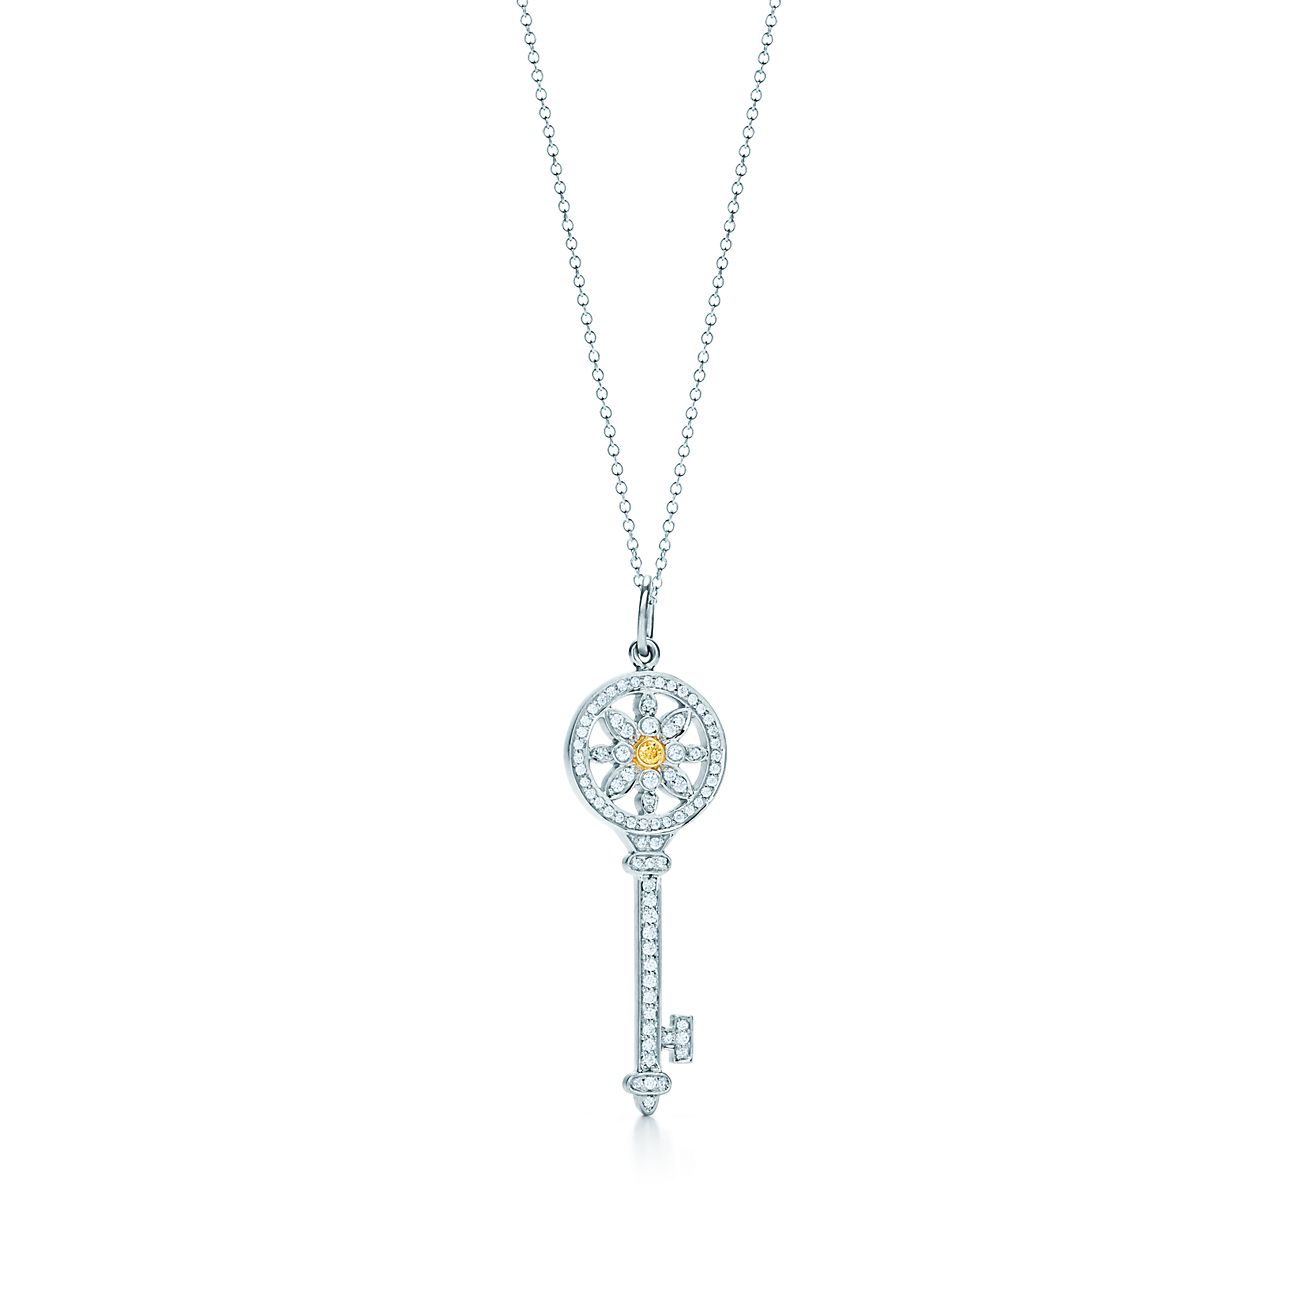 Tiffany Keys daisy key in platinum and 